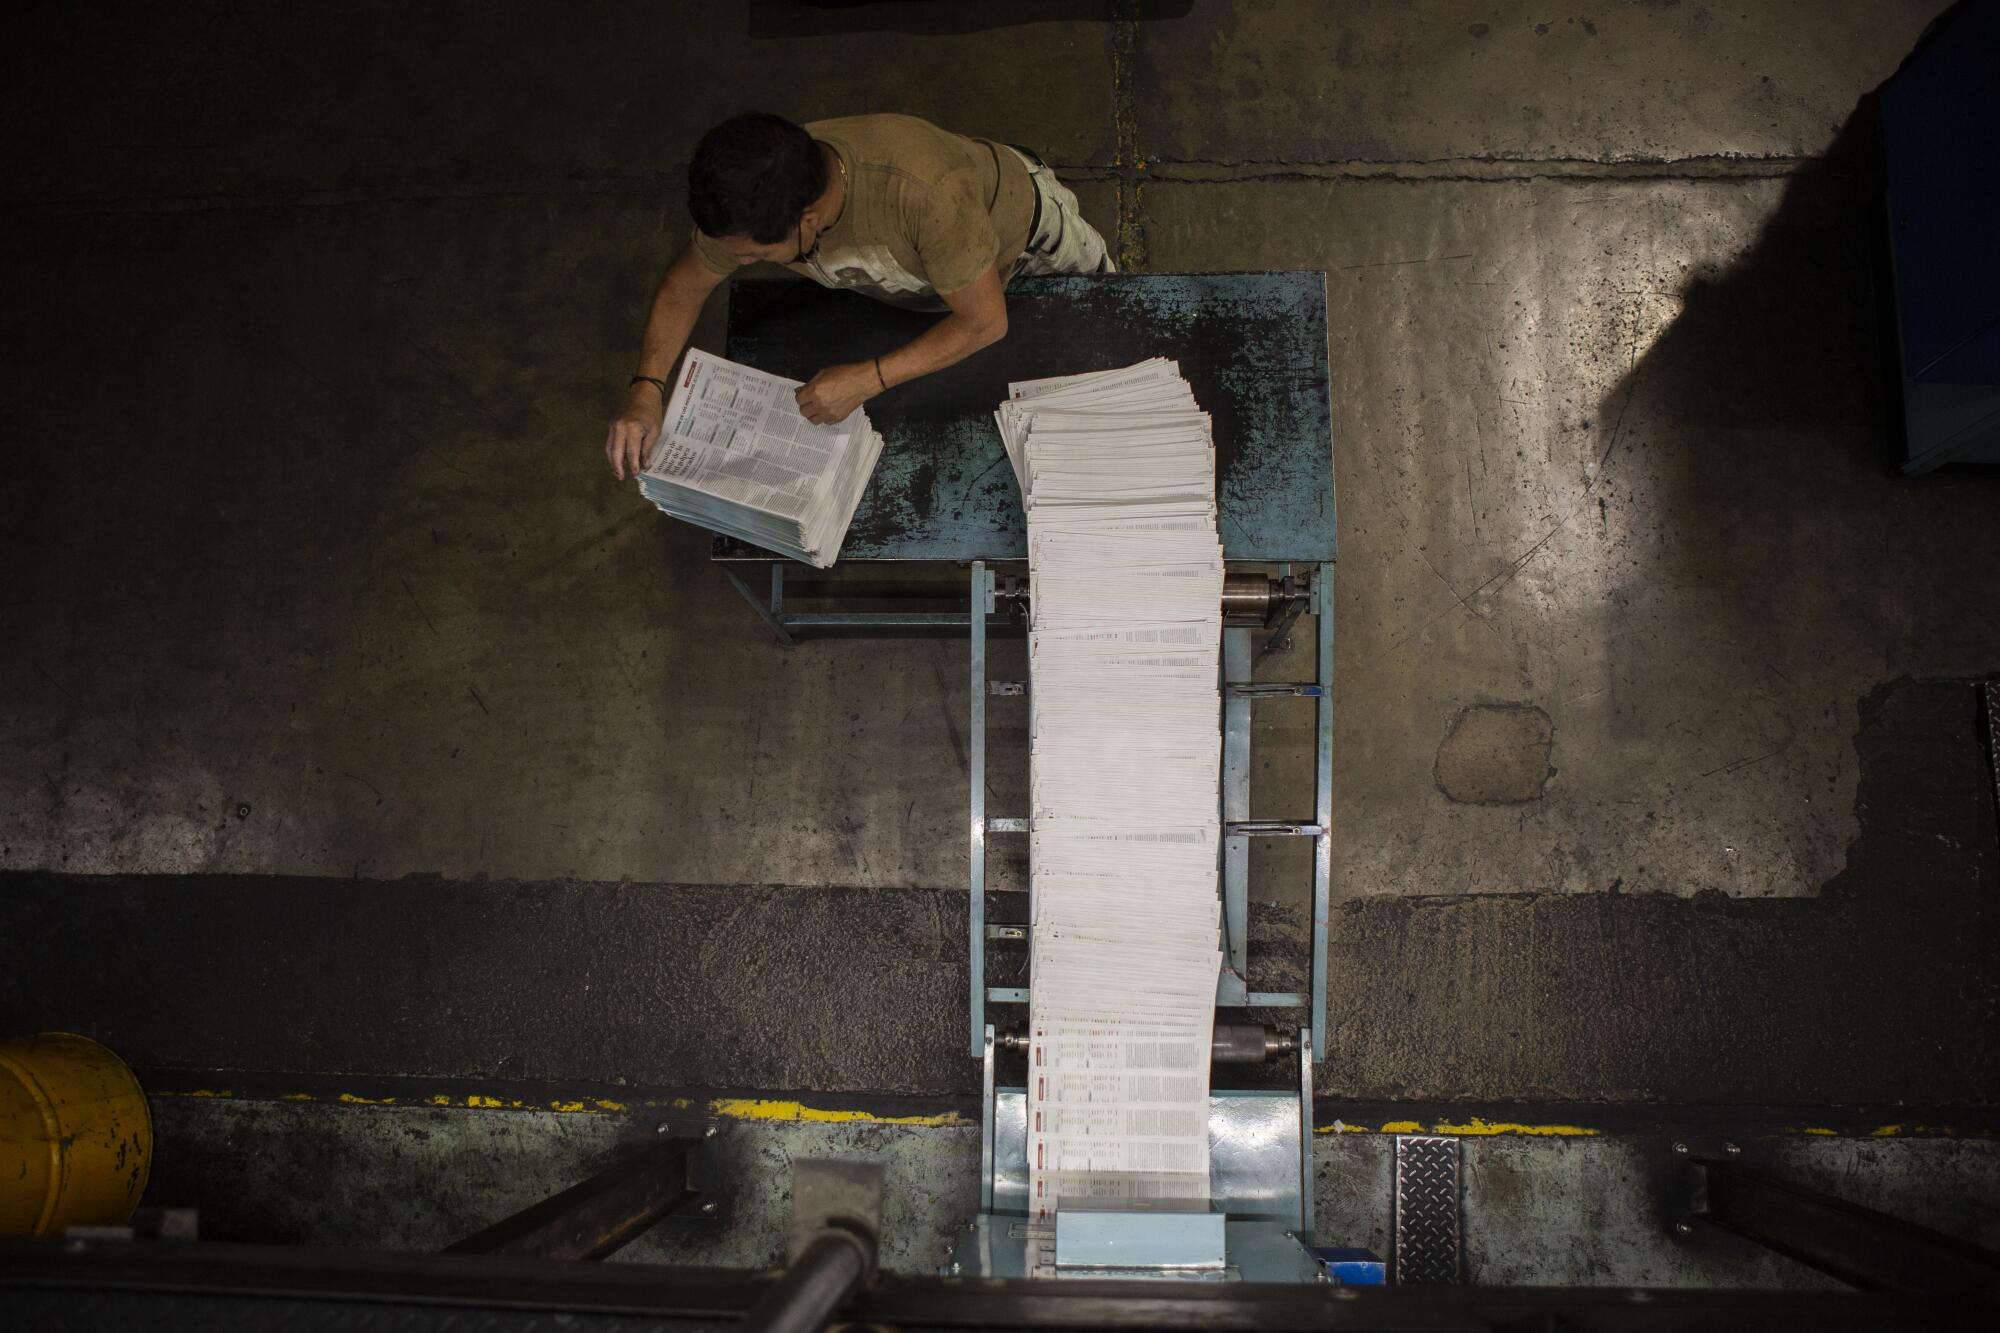 A worker stacks freshly printed newspapers.